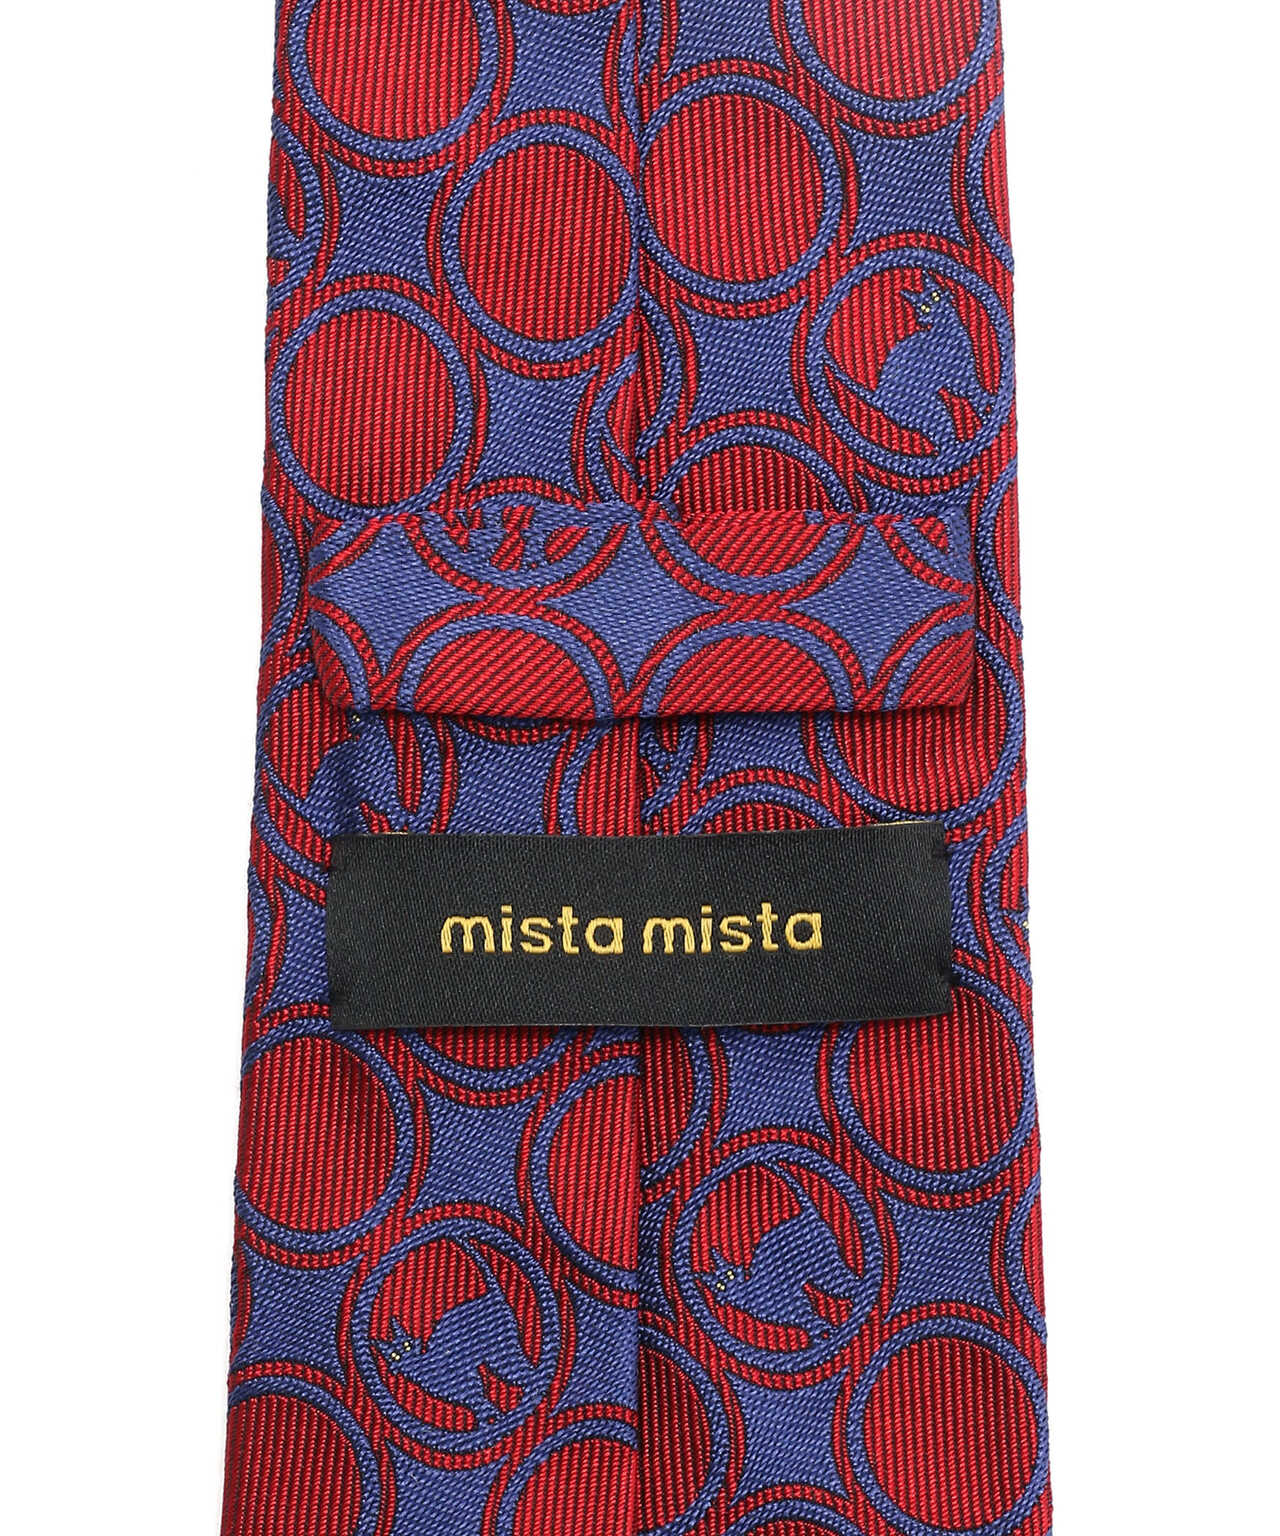 mista mista/ミスタ ミスタ/ネクタイ MN203